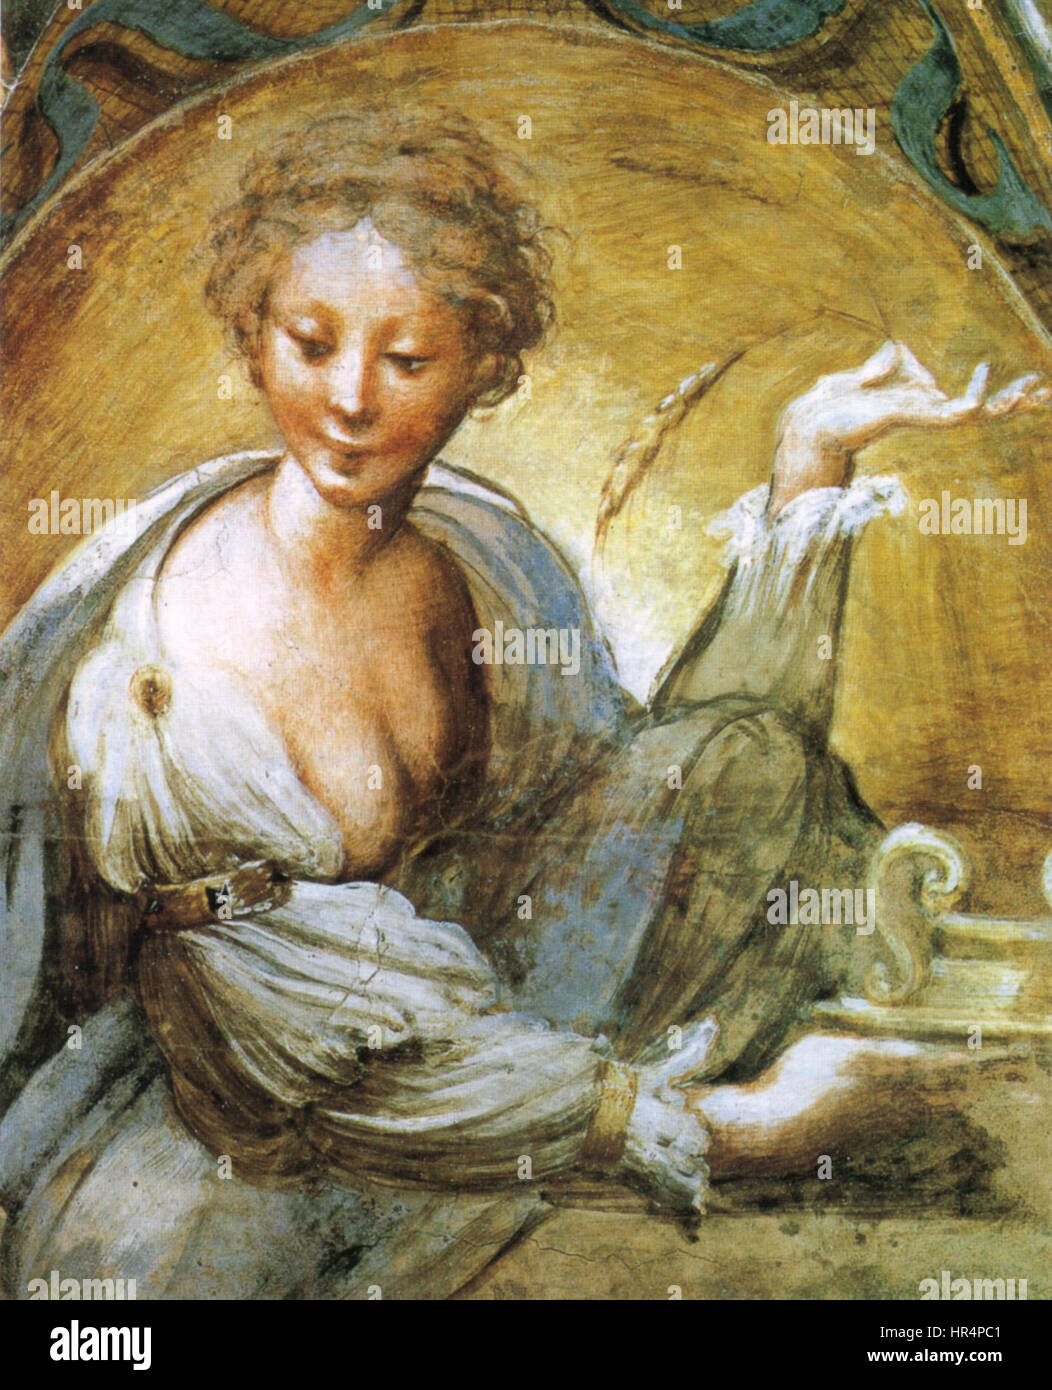 Parmigianino, affreschi di fontanellato 05 Stock Photo